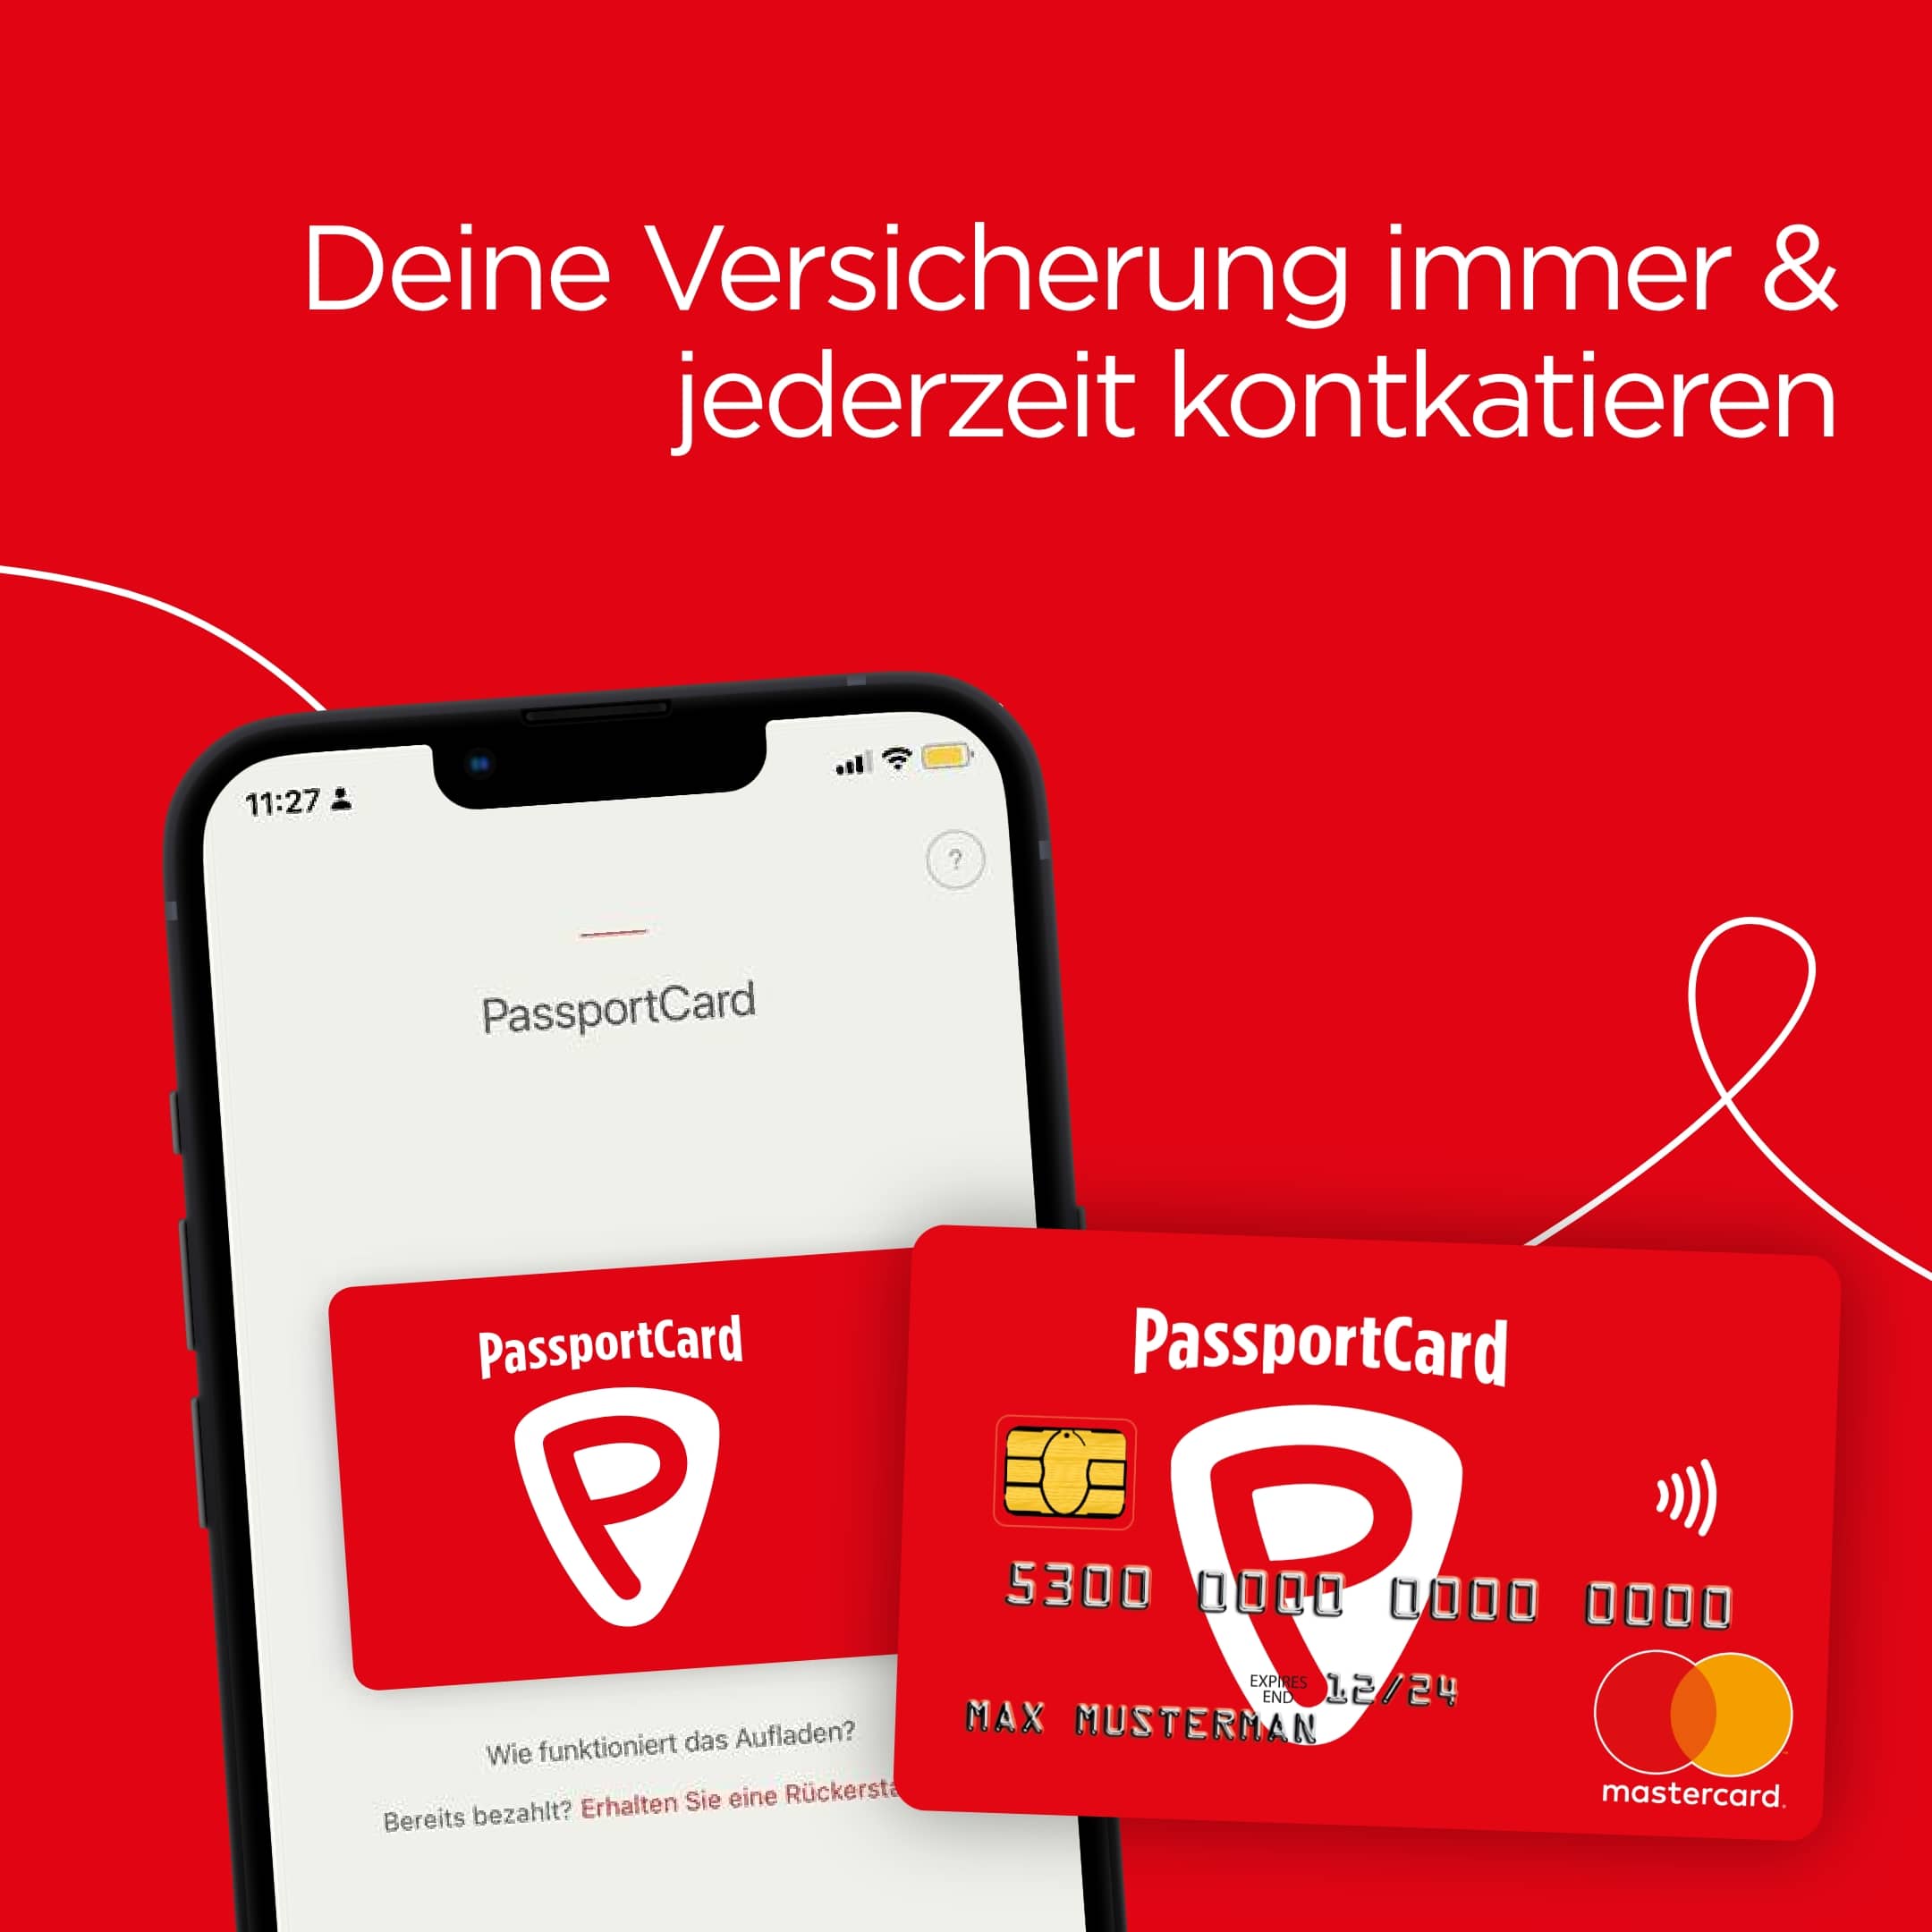 PassportCard/Internationale Krankenversicherung/instagram-post-app-4